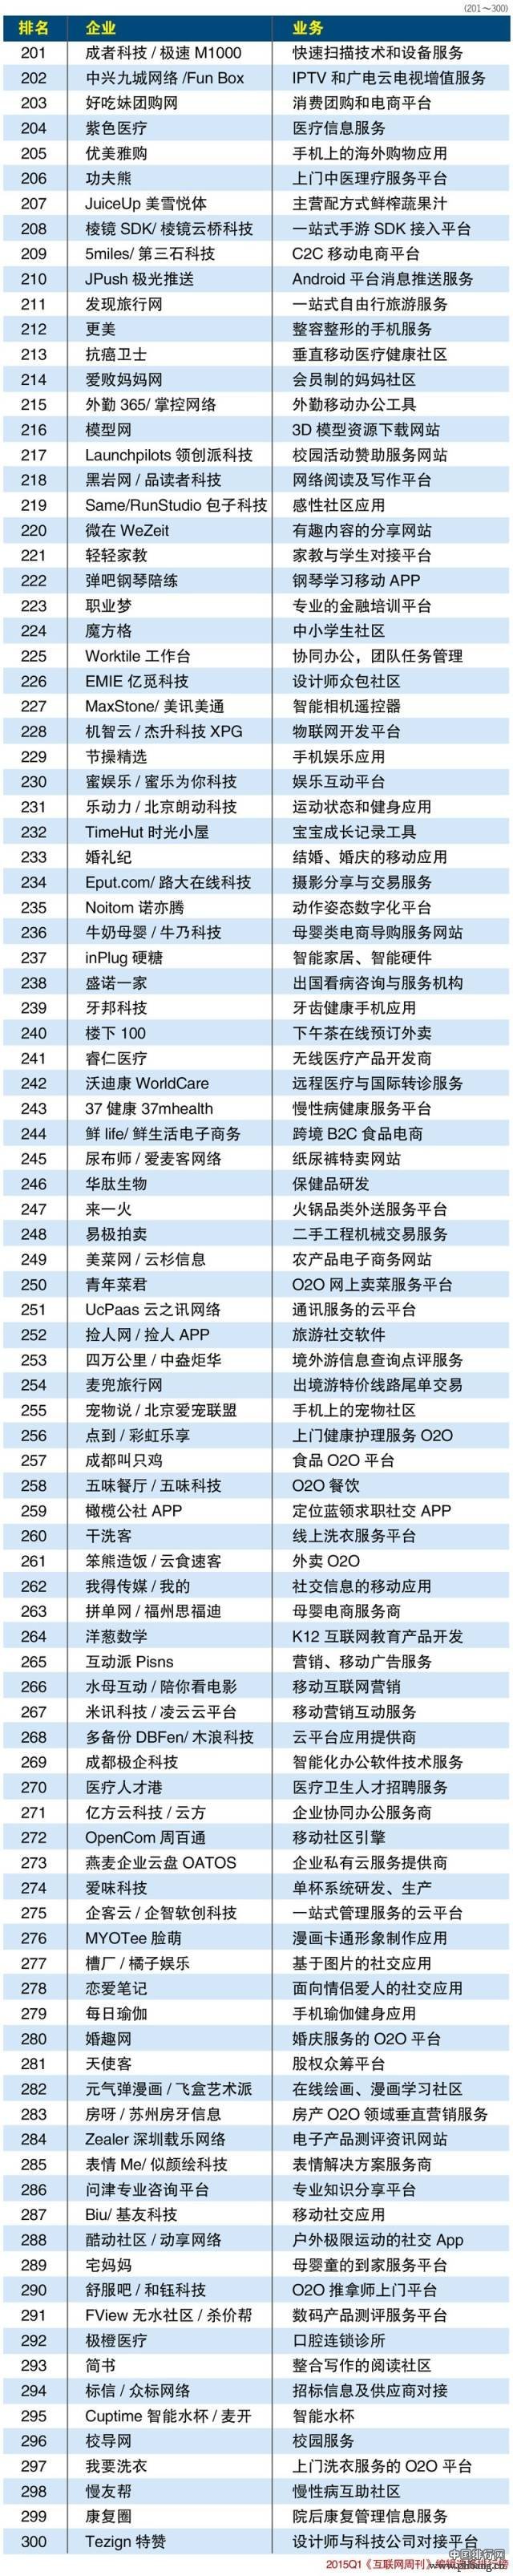 2015年一季度新中国互联网公司排行榜TOP300